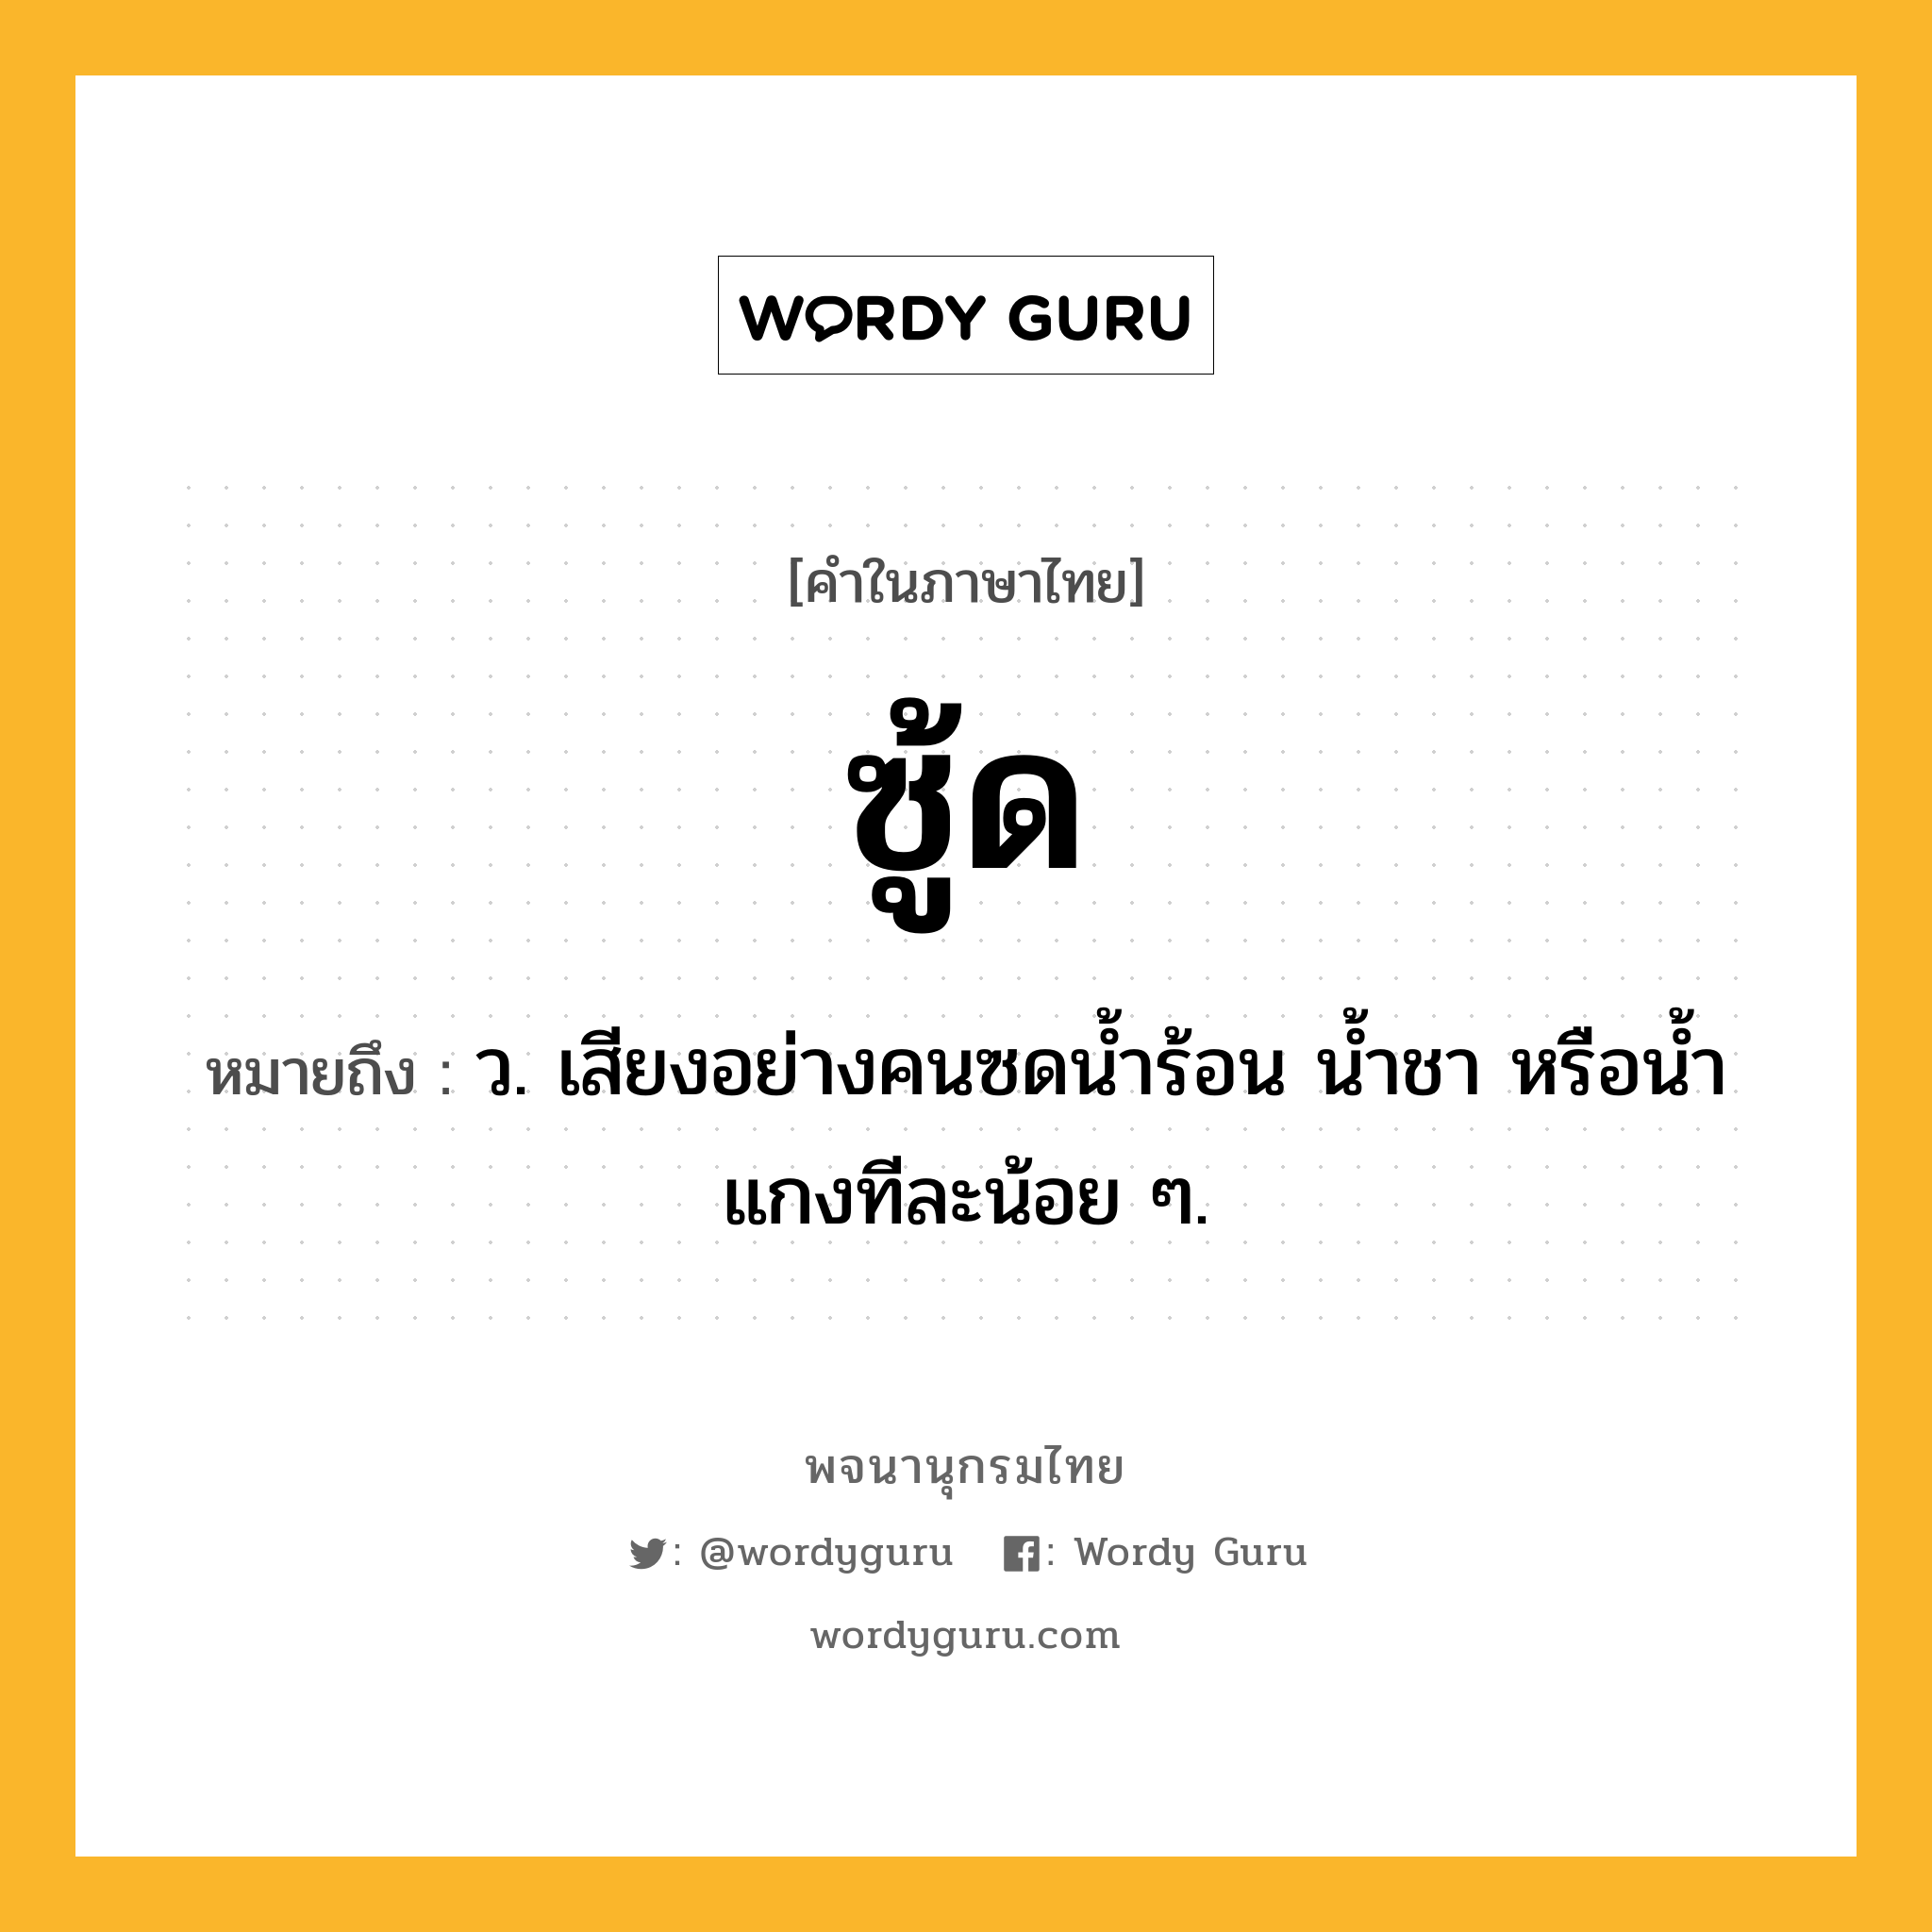 ซู้ด หมายถึงอะไร?, คำในภาษาไทย ซู้ด หมายถึง ว. เสียงอย่างคนซดนํ้าร้อน นํ้าชา หรือนํ้าแกงทีละน้อย ๆ.